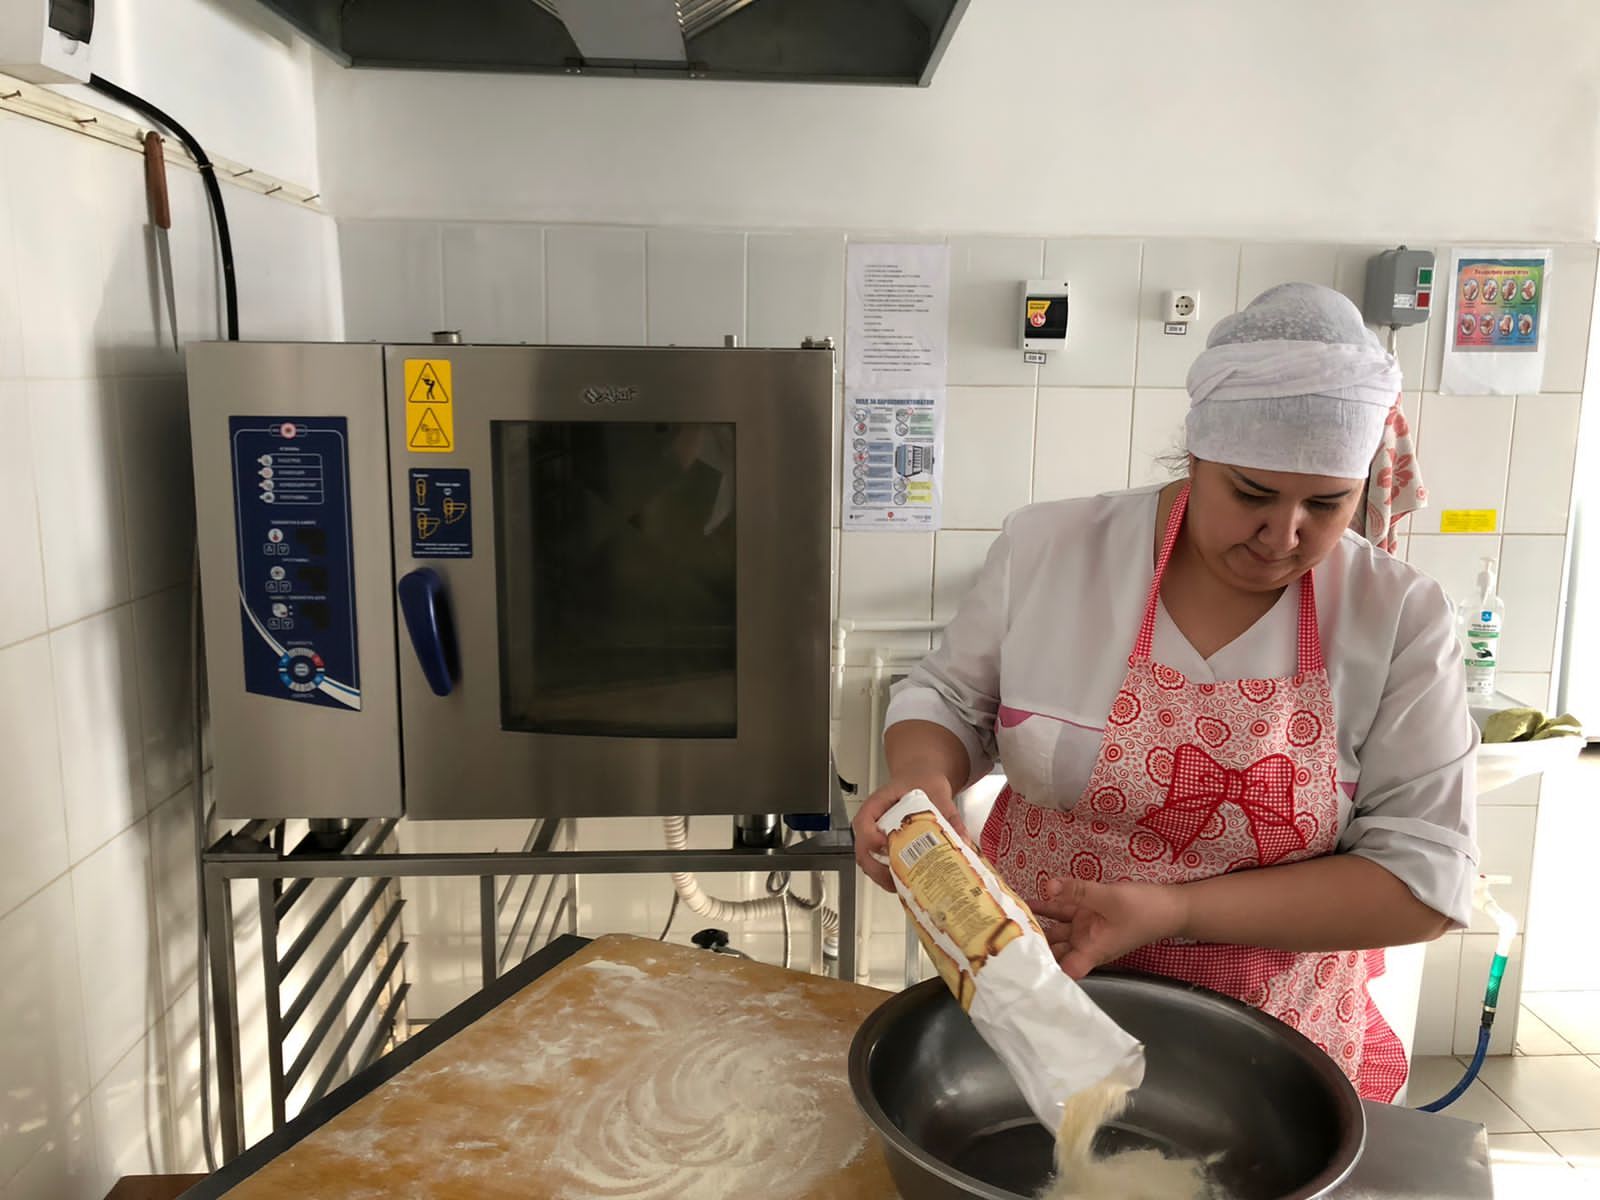 Мастера кулинарии Буинска учат готовить вкусные блюда из творога (фото)